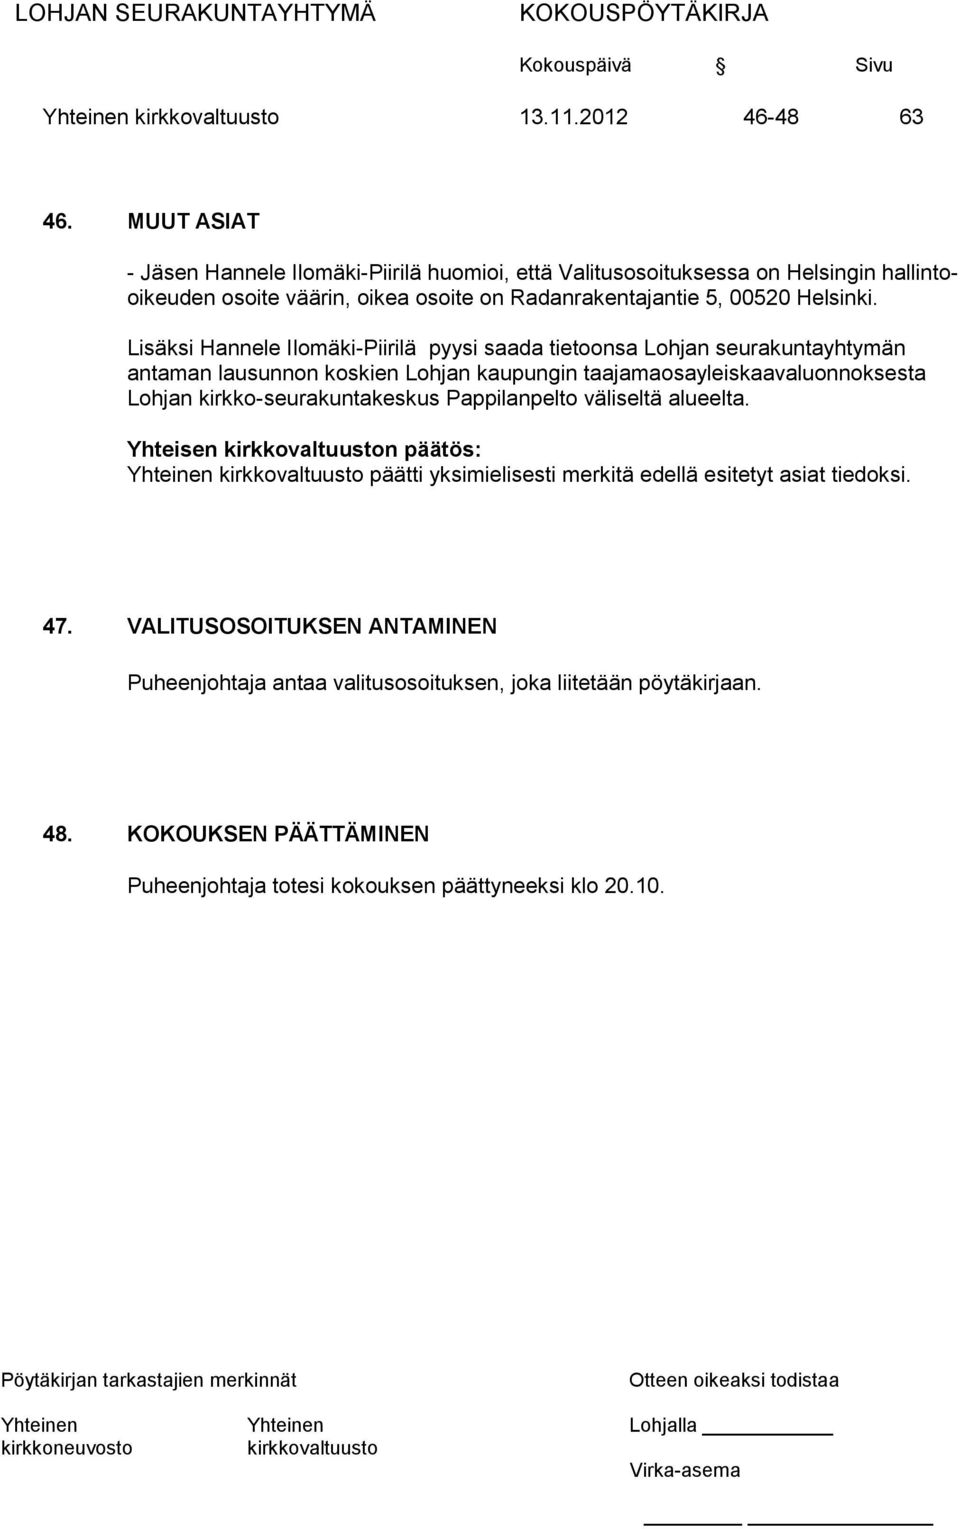 Lisäksi Hannele Ilomäki-Piirilä pyysi saada tietoonsa Lohjan seurakuntayhtymän antaman lausunnon koskien Lohjan kaupungin taajamaosayleiskaavaluonnoksesta Lohjan